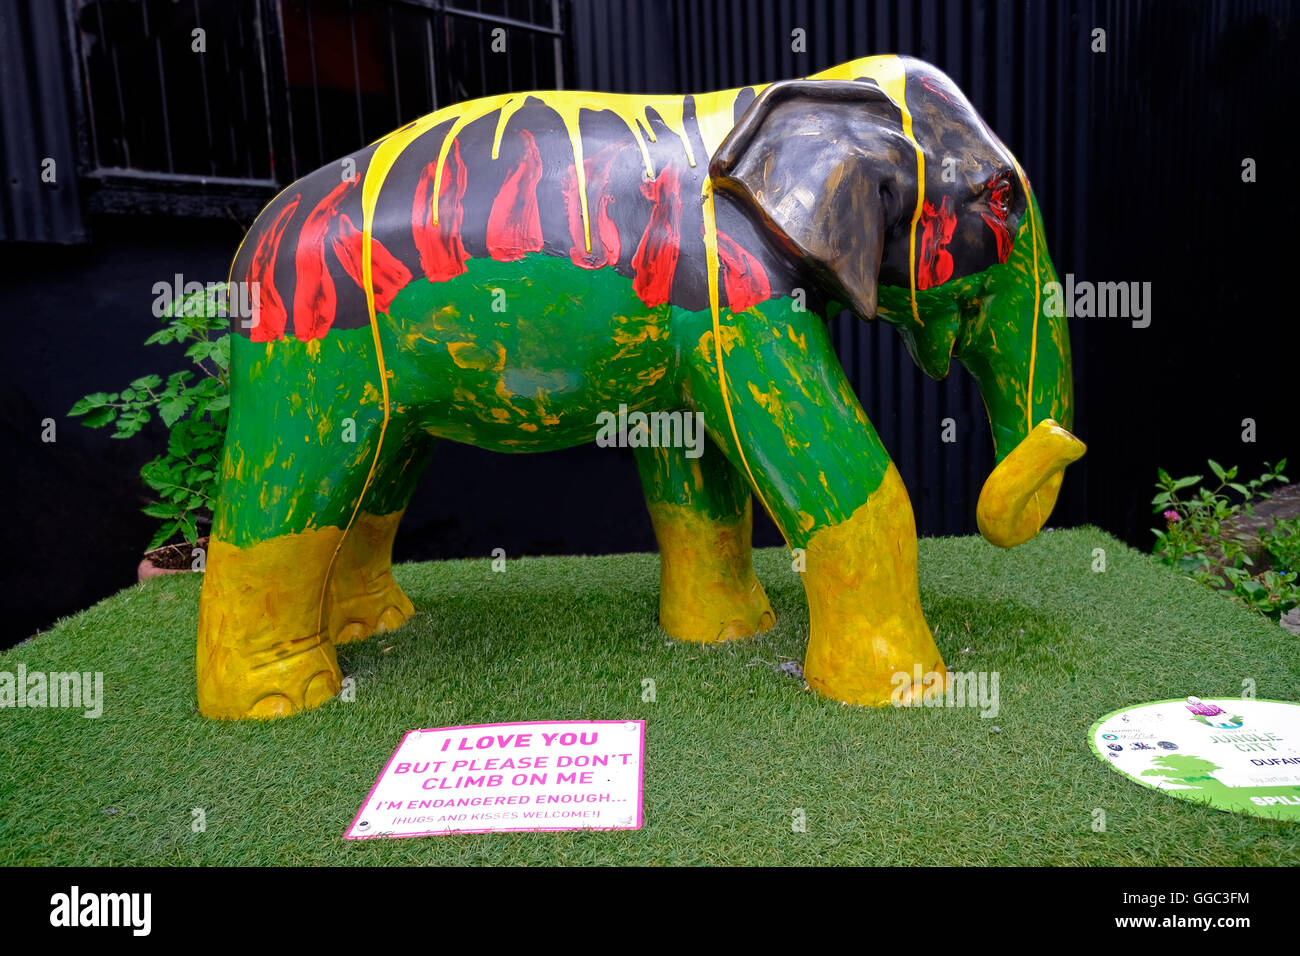 Modello elefante in vivaci yellowq verde e rosso i colori utilizzati per un annuncio promozionale in Clonakilty Co. Cork in Irlanda Foto Stock